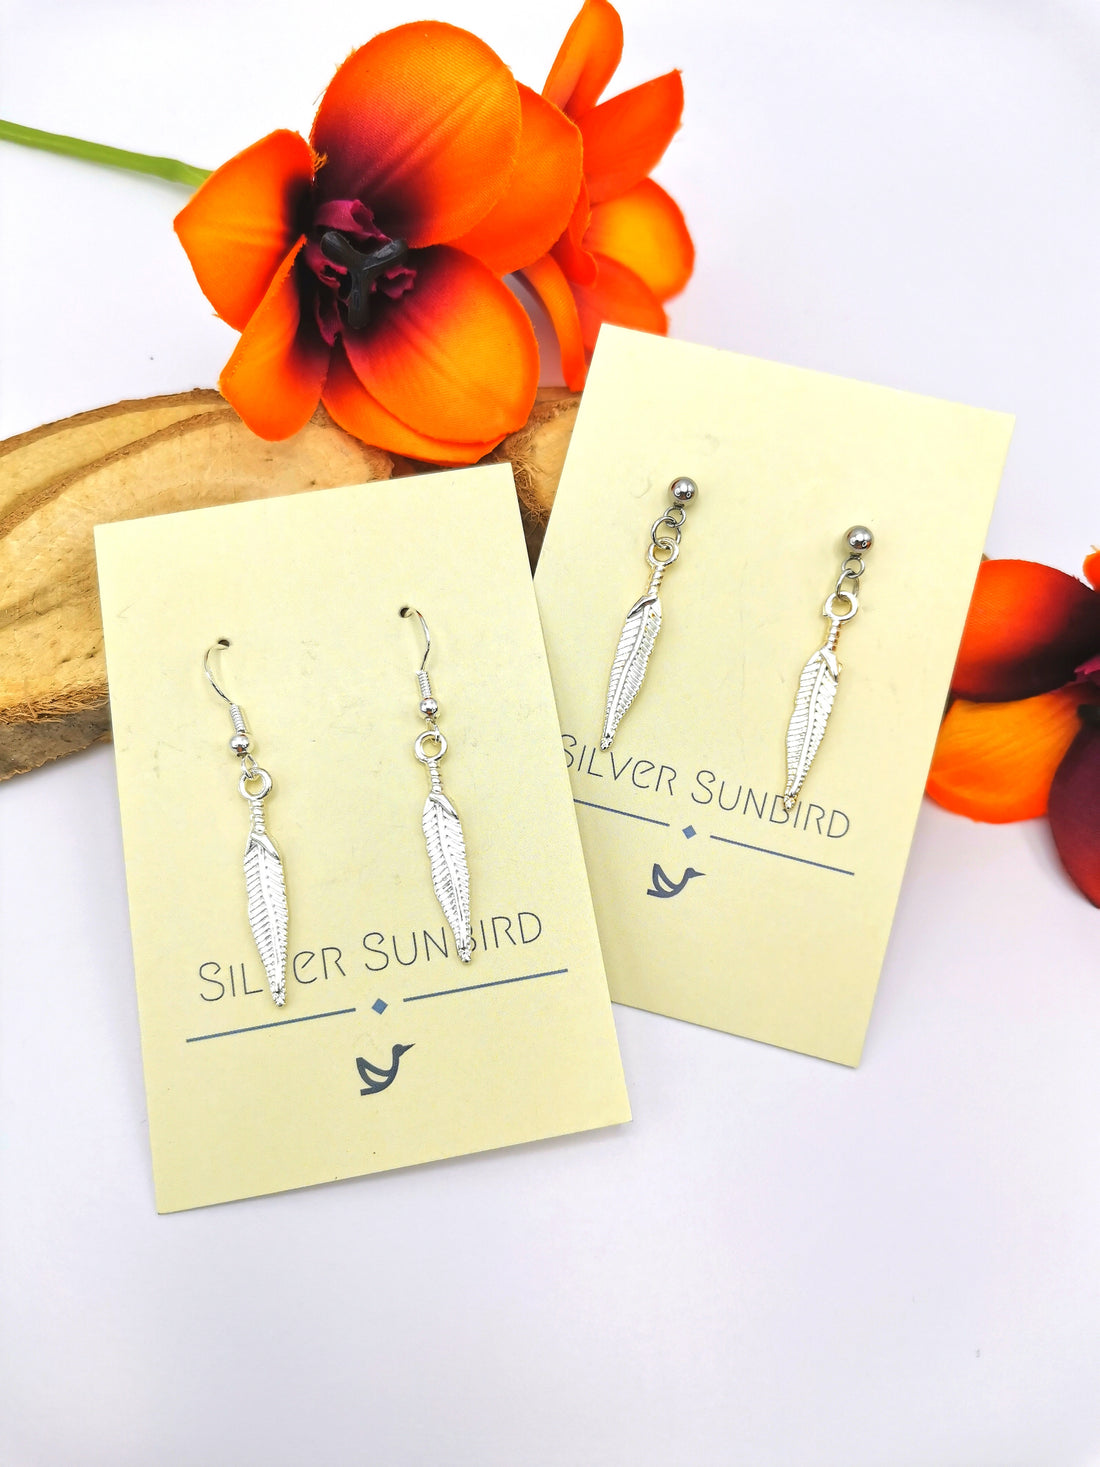 Fabulous Feather Earrings - Silver Sunbird animal earrings